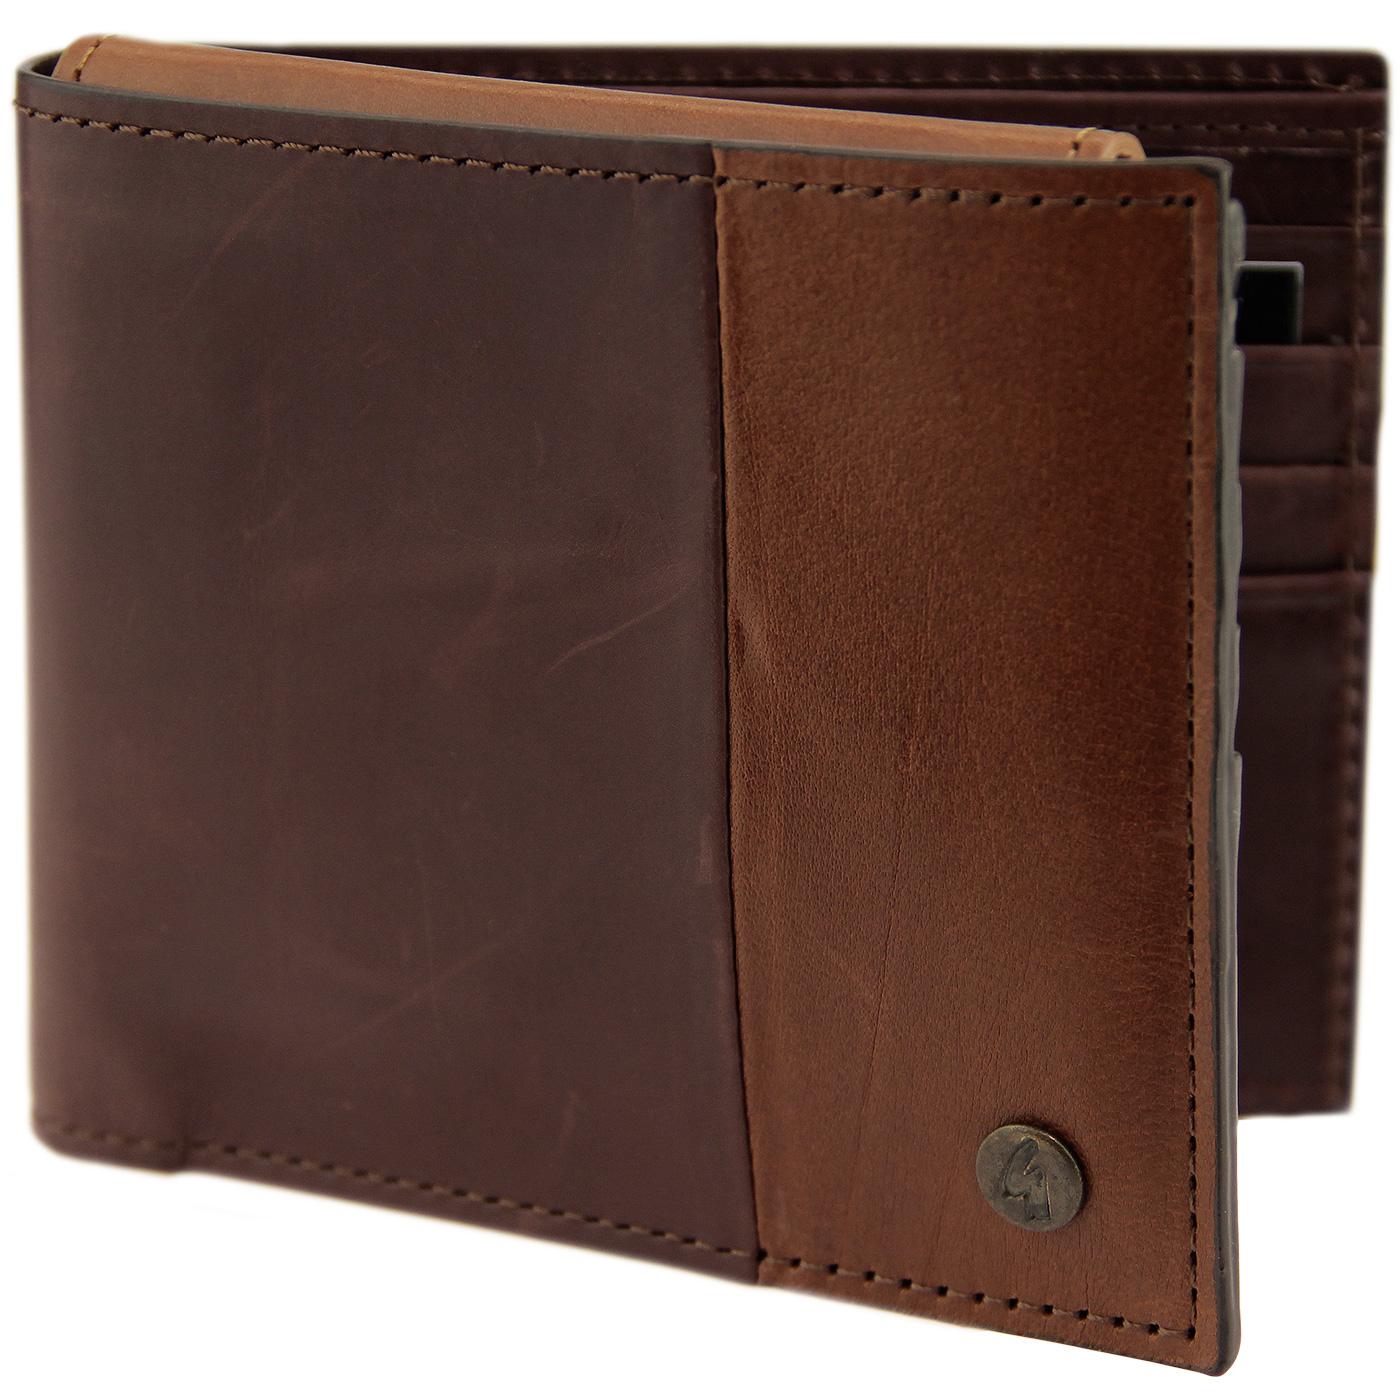 GABICCI VINTAGE Leather Cardholder & Wallet Set in Brown